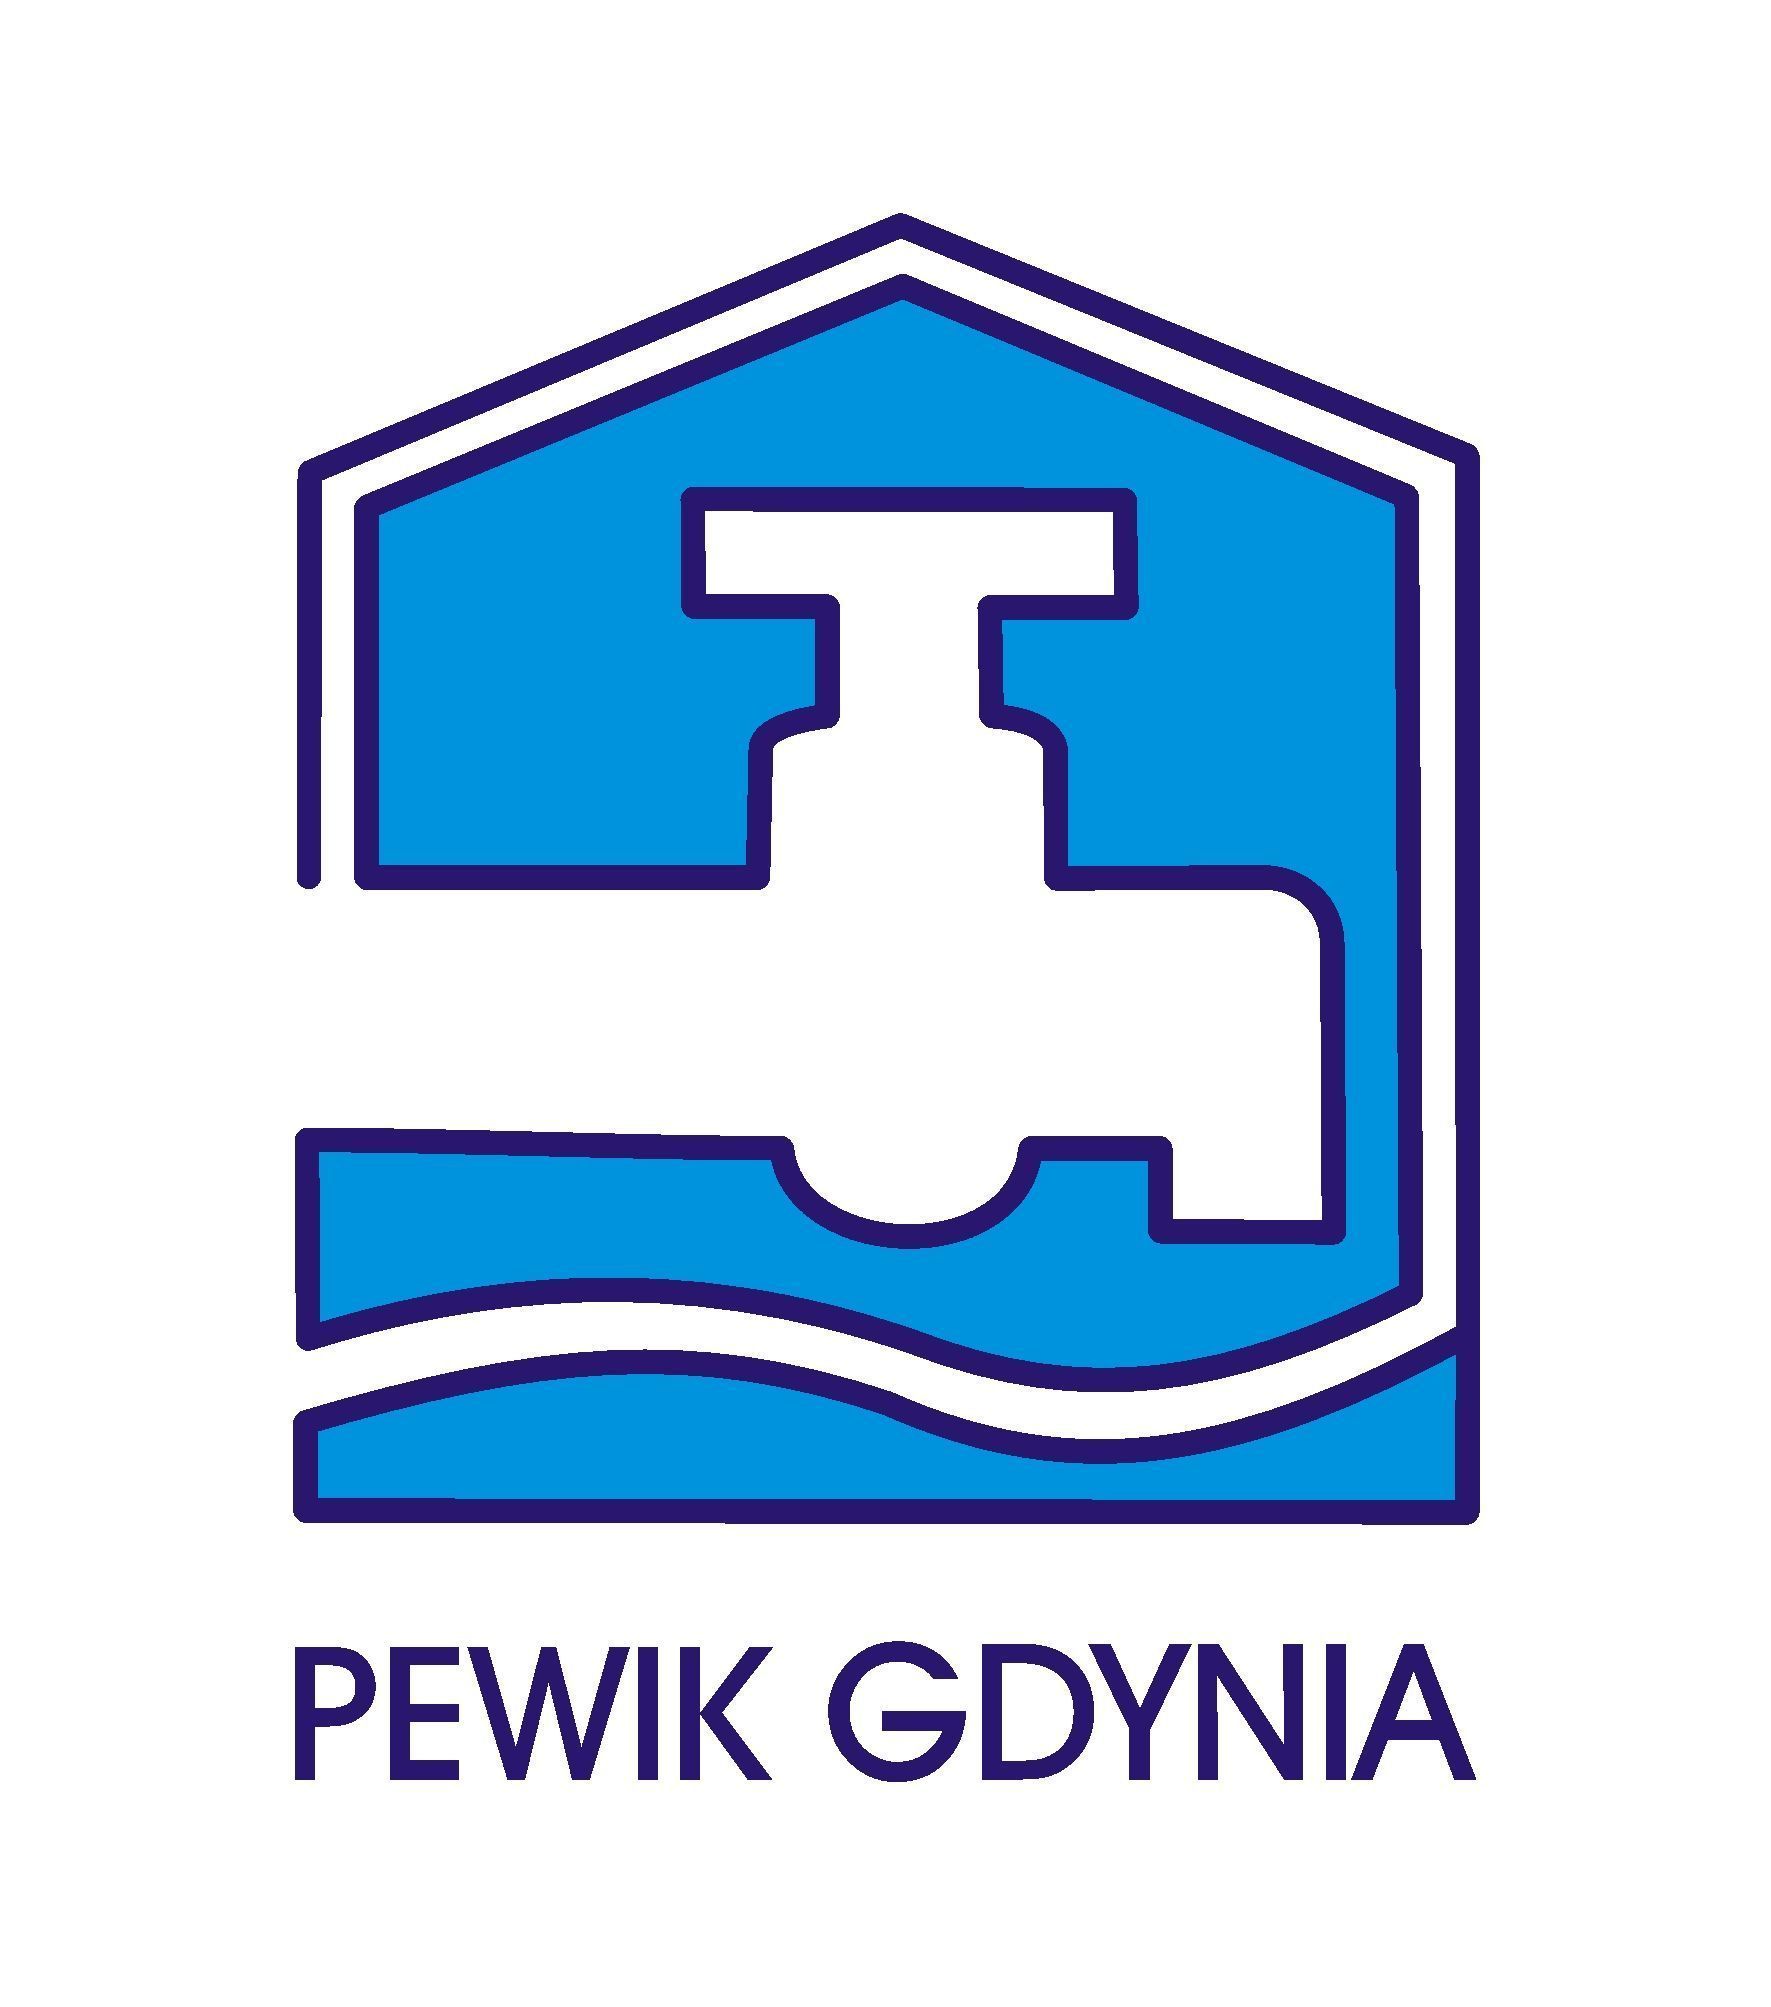 Pewik Gdynia